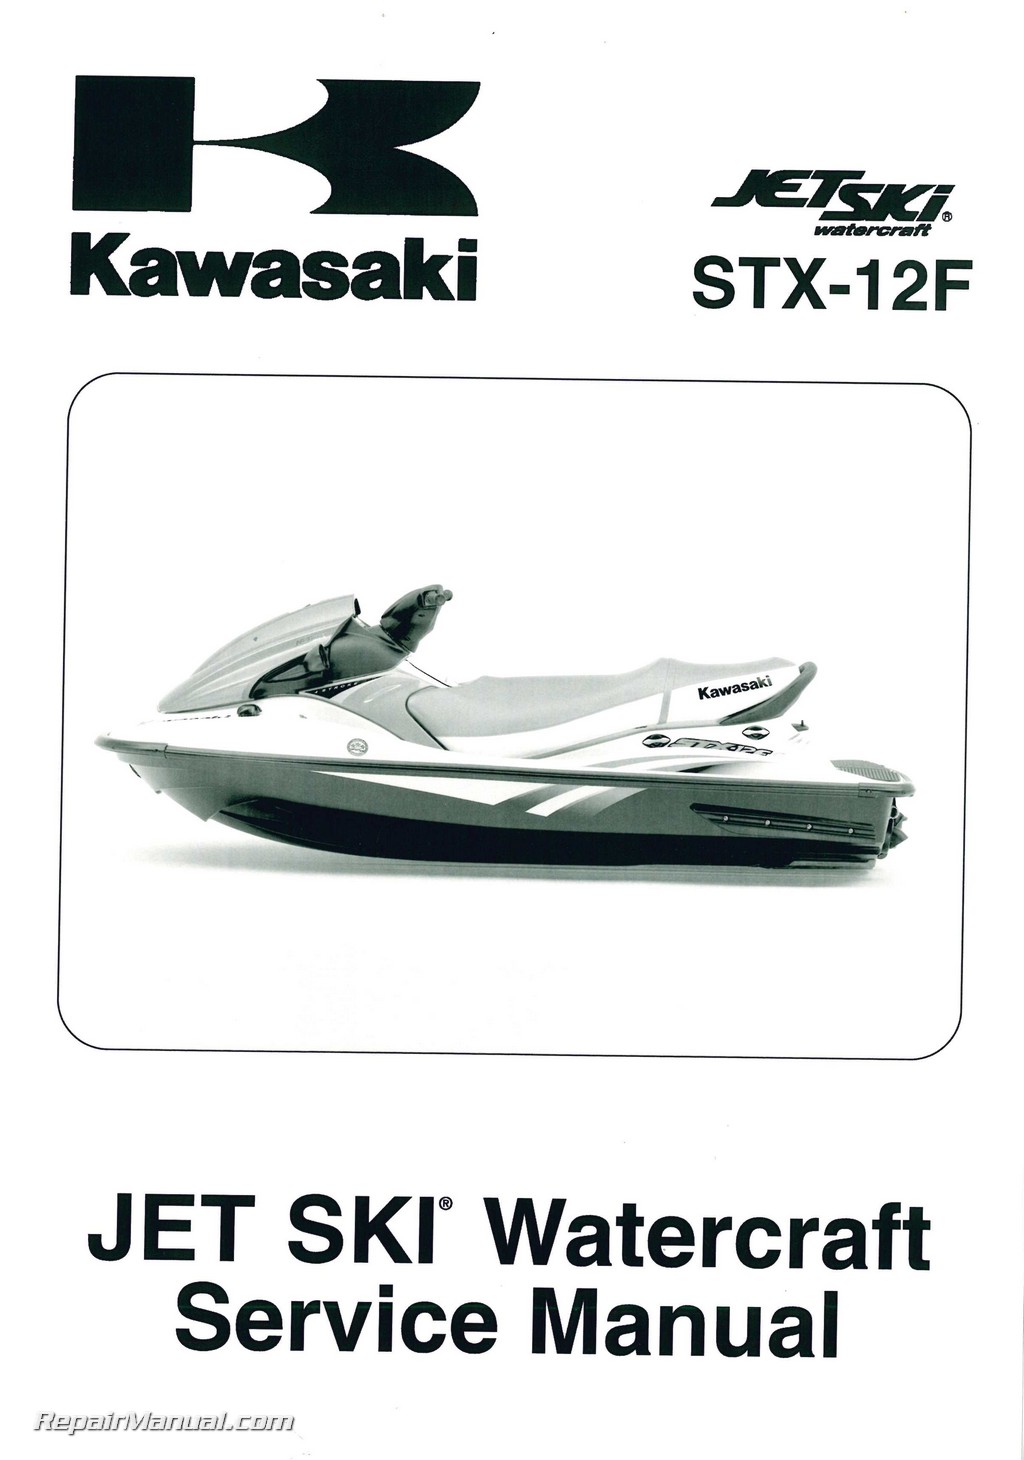 2007 Kawasaki Stx 12F Service Manual